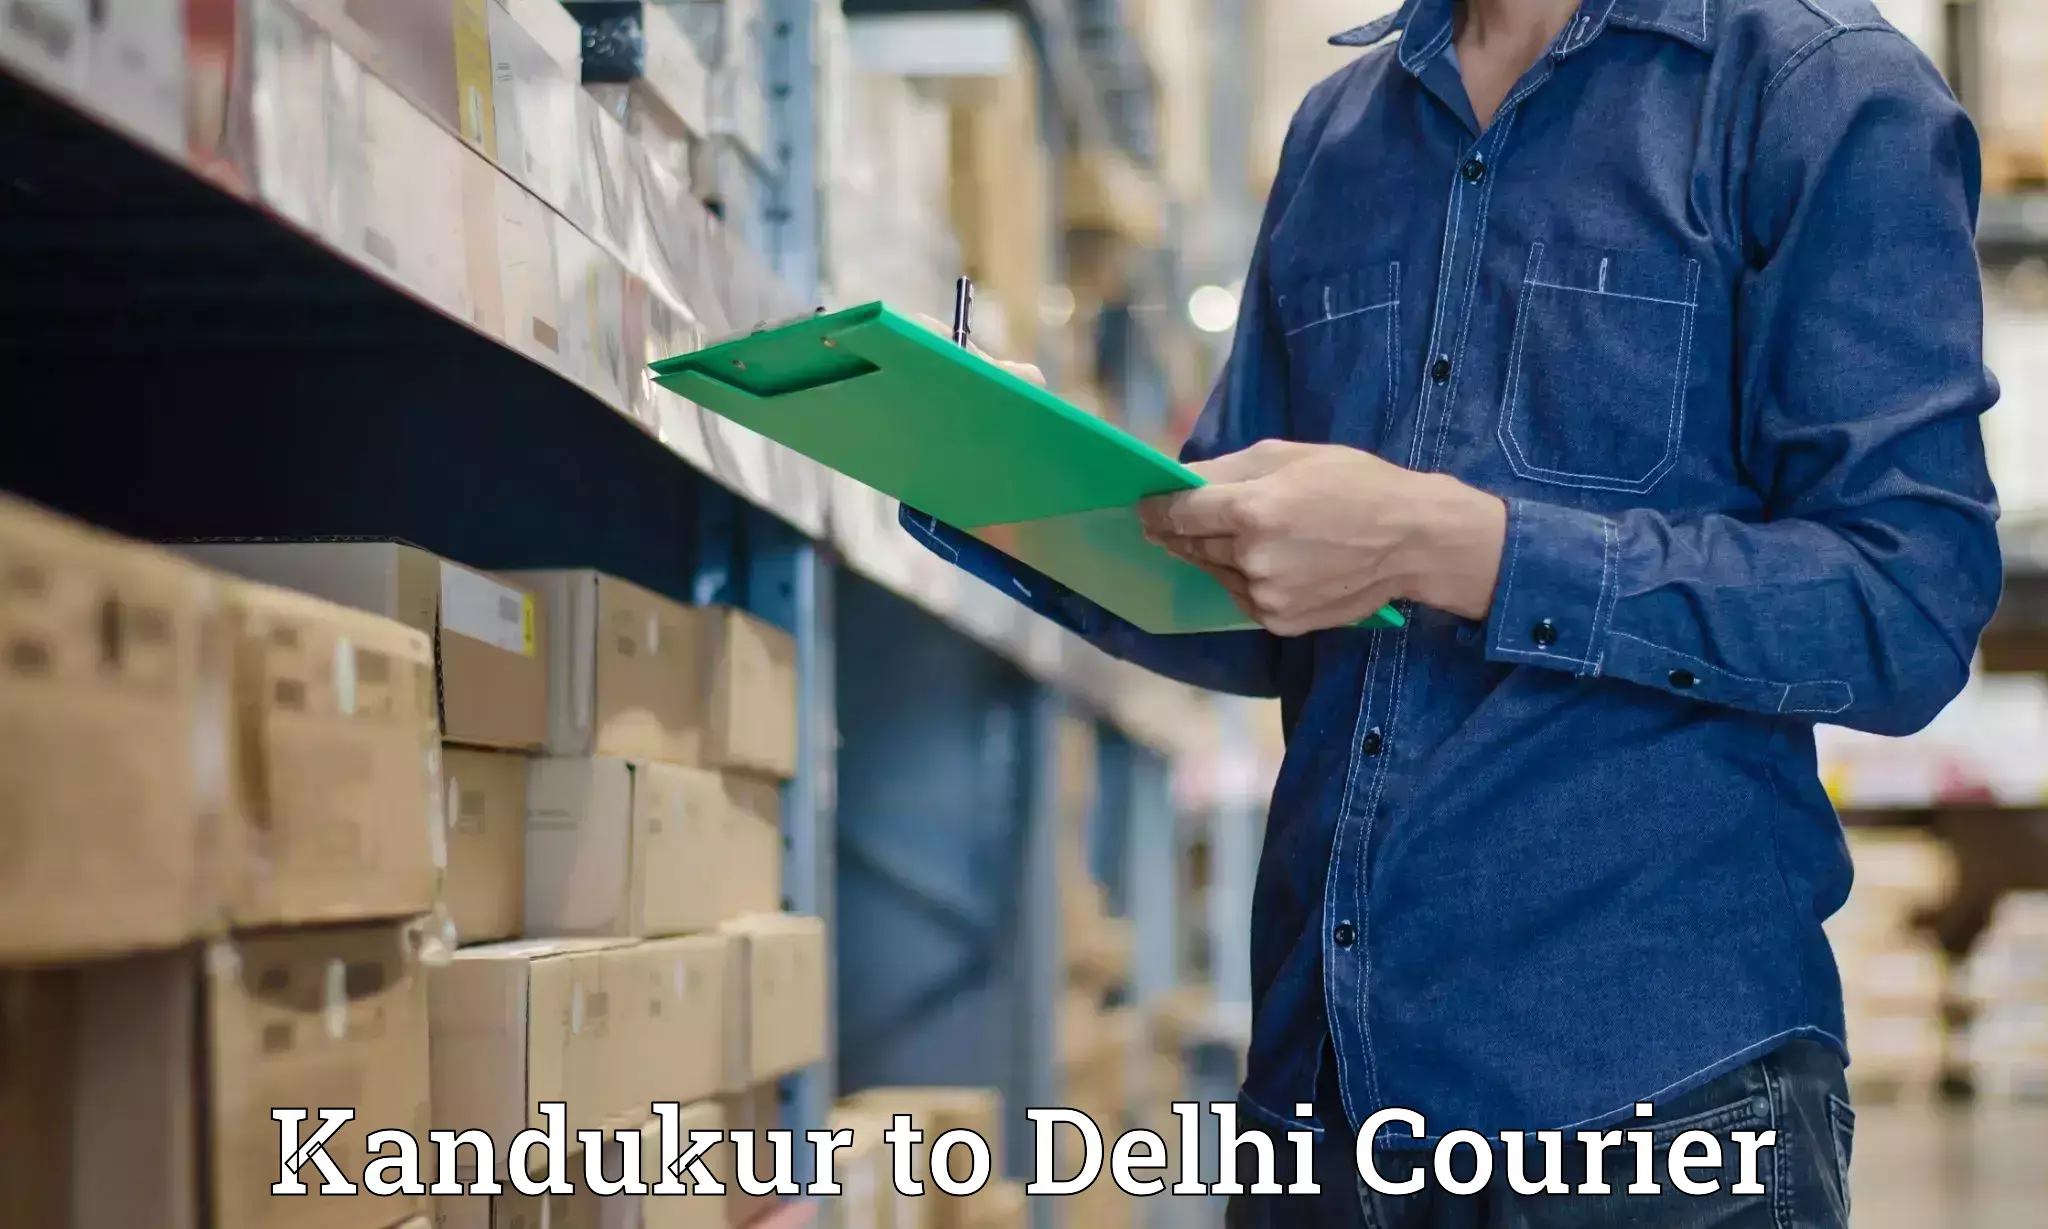 Courier dispatch services Kandukur to NIT Delhi